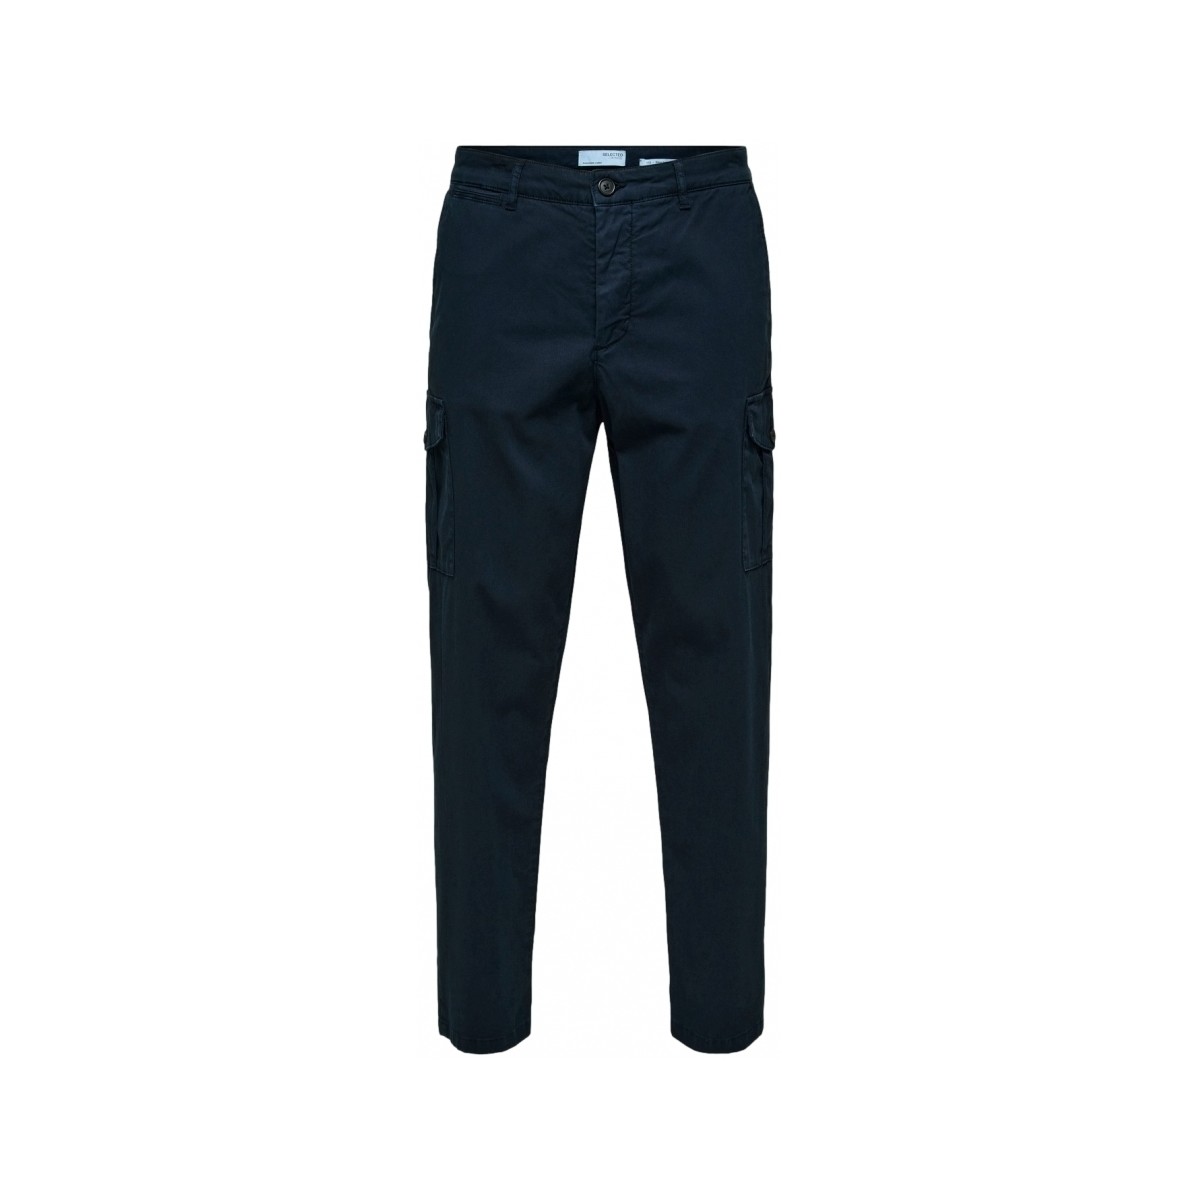 tekstylia Męskie Spodnie Selected Slim Tapered Wick 172 Cargo Pants - Dark Sapphire Niebieski